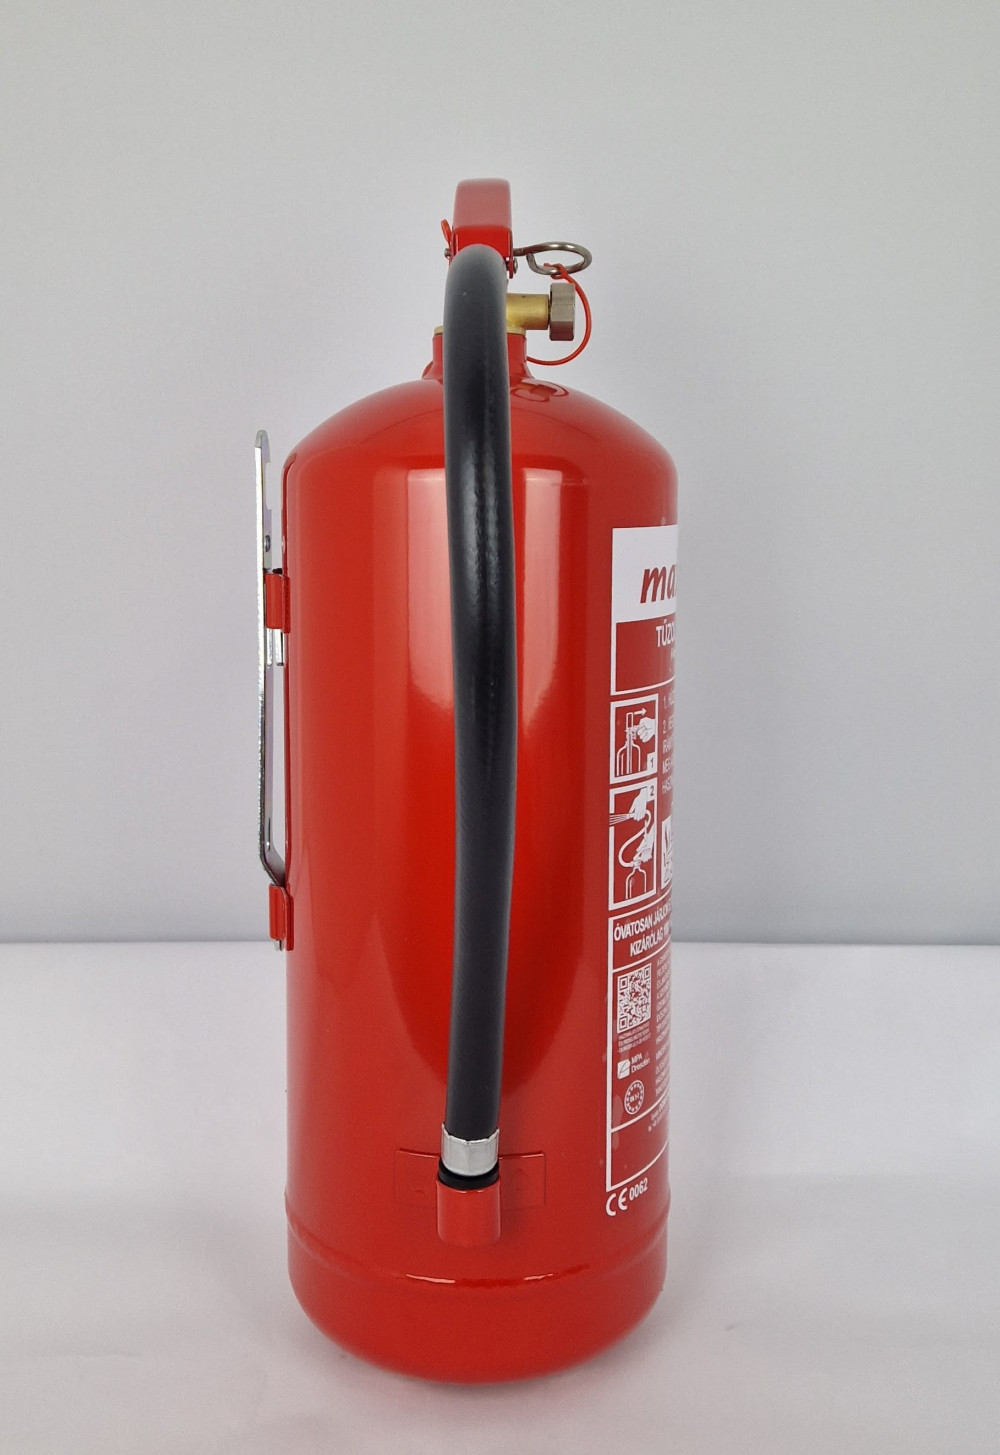 MAXFIRE XL 6 kg-os ABC porral oltó, poroltó tűzoltó készülék